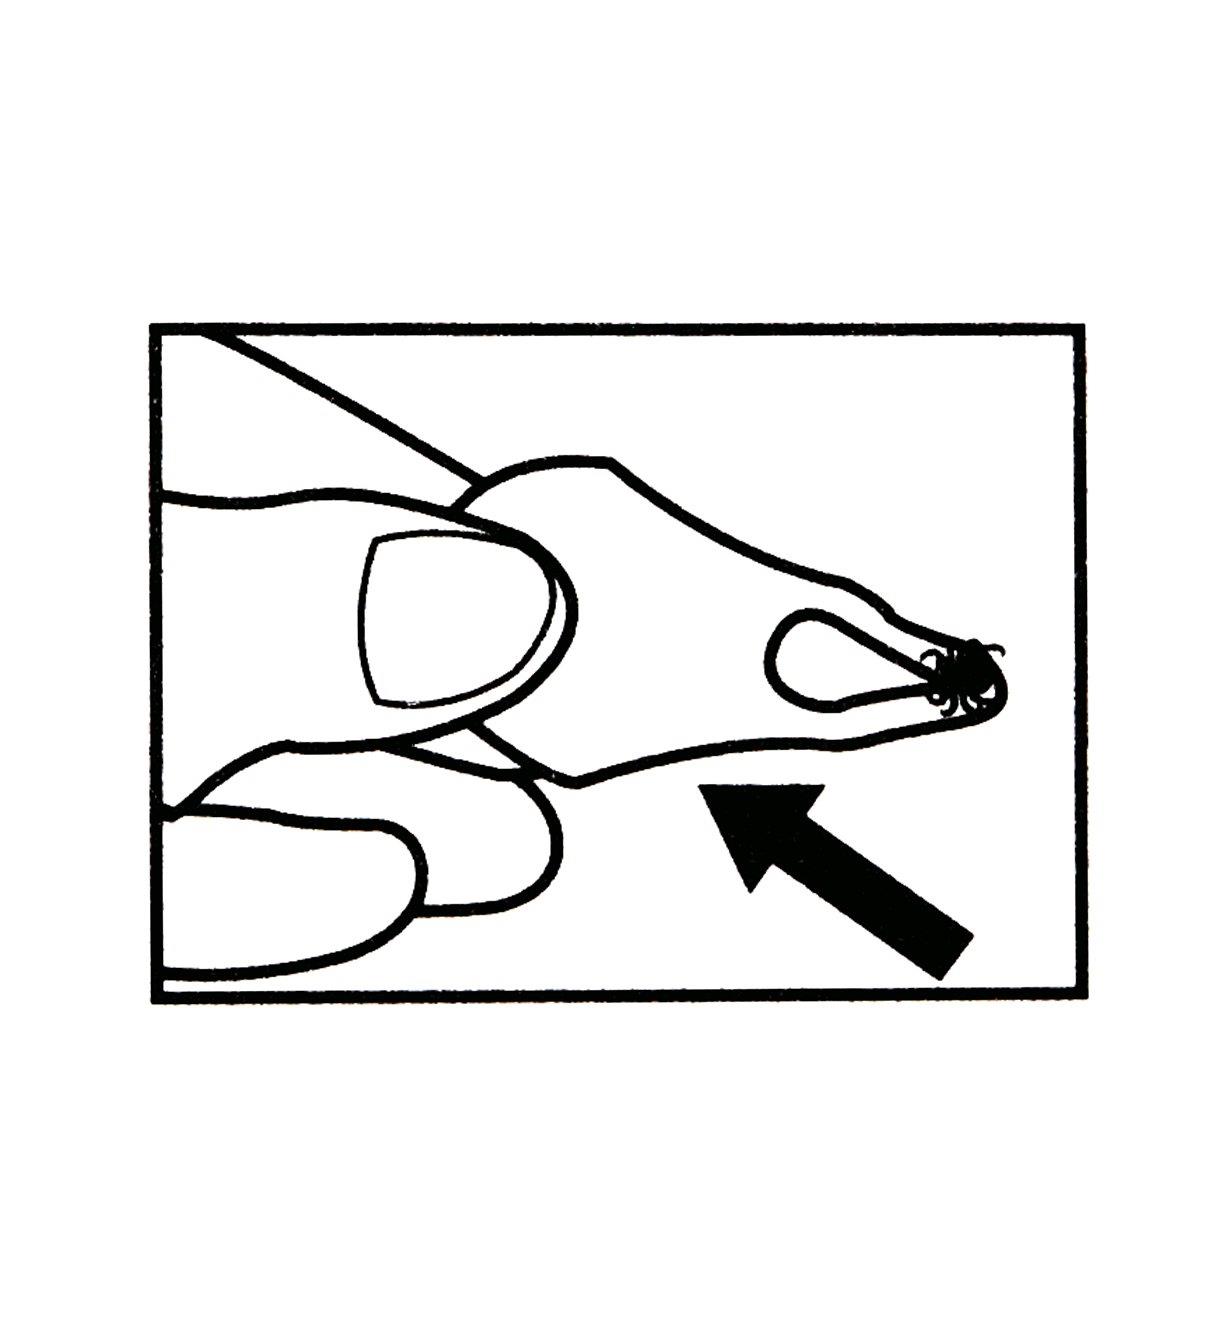 Illustration montrant comment soulever l'extracteur de tiques pour retirer la tique de la peau